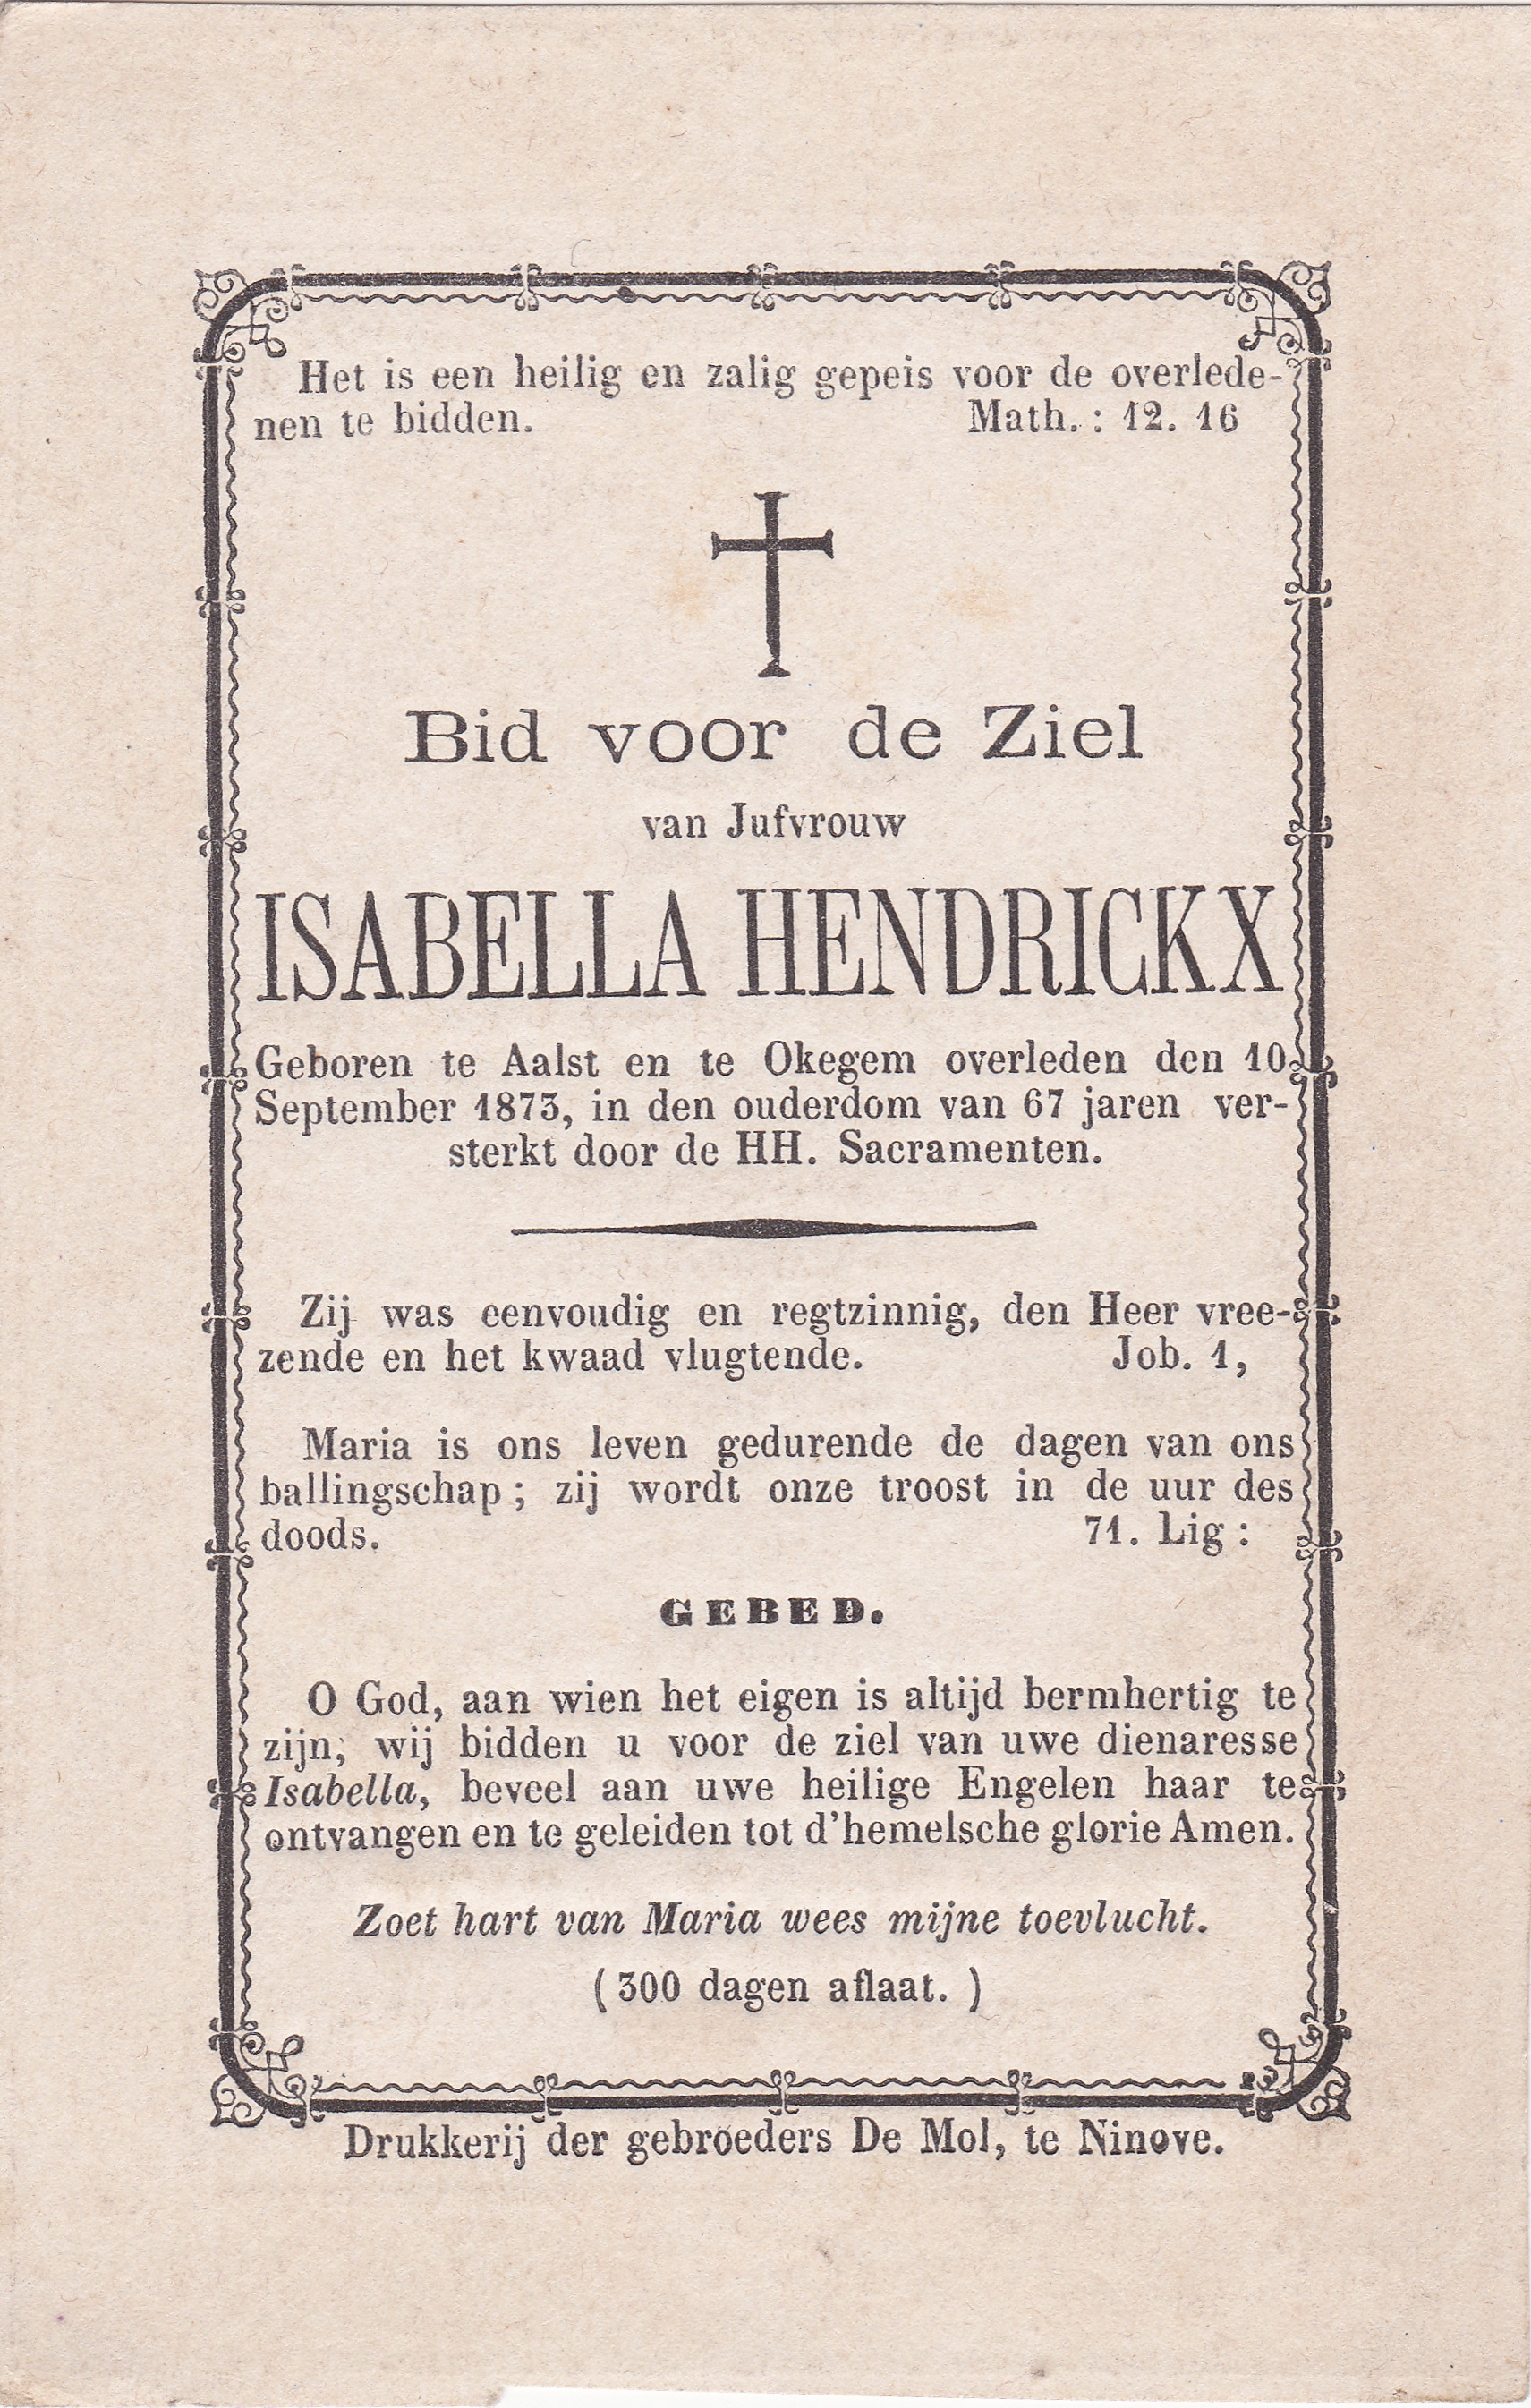 Hendrickx Isabella